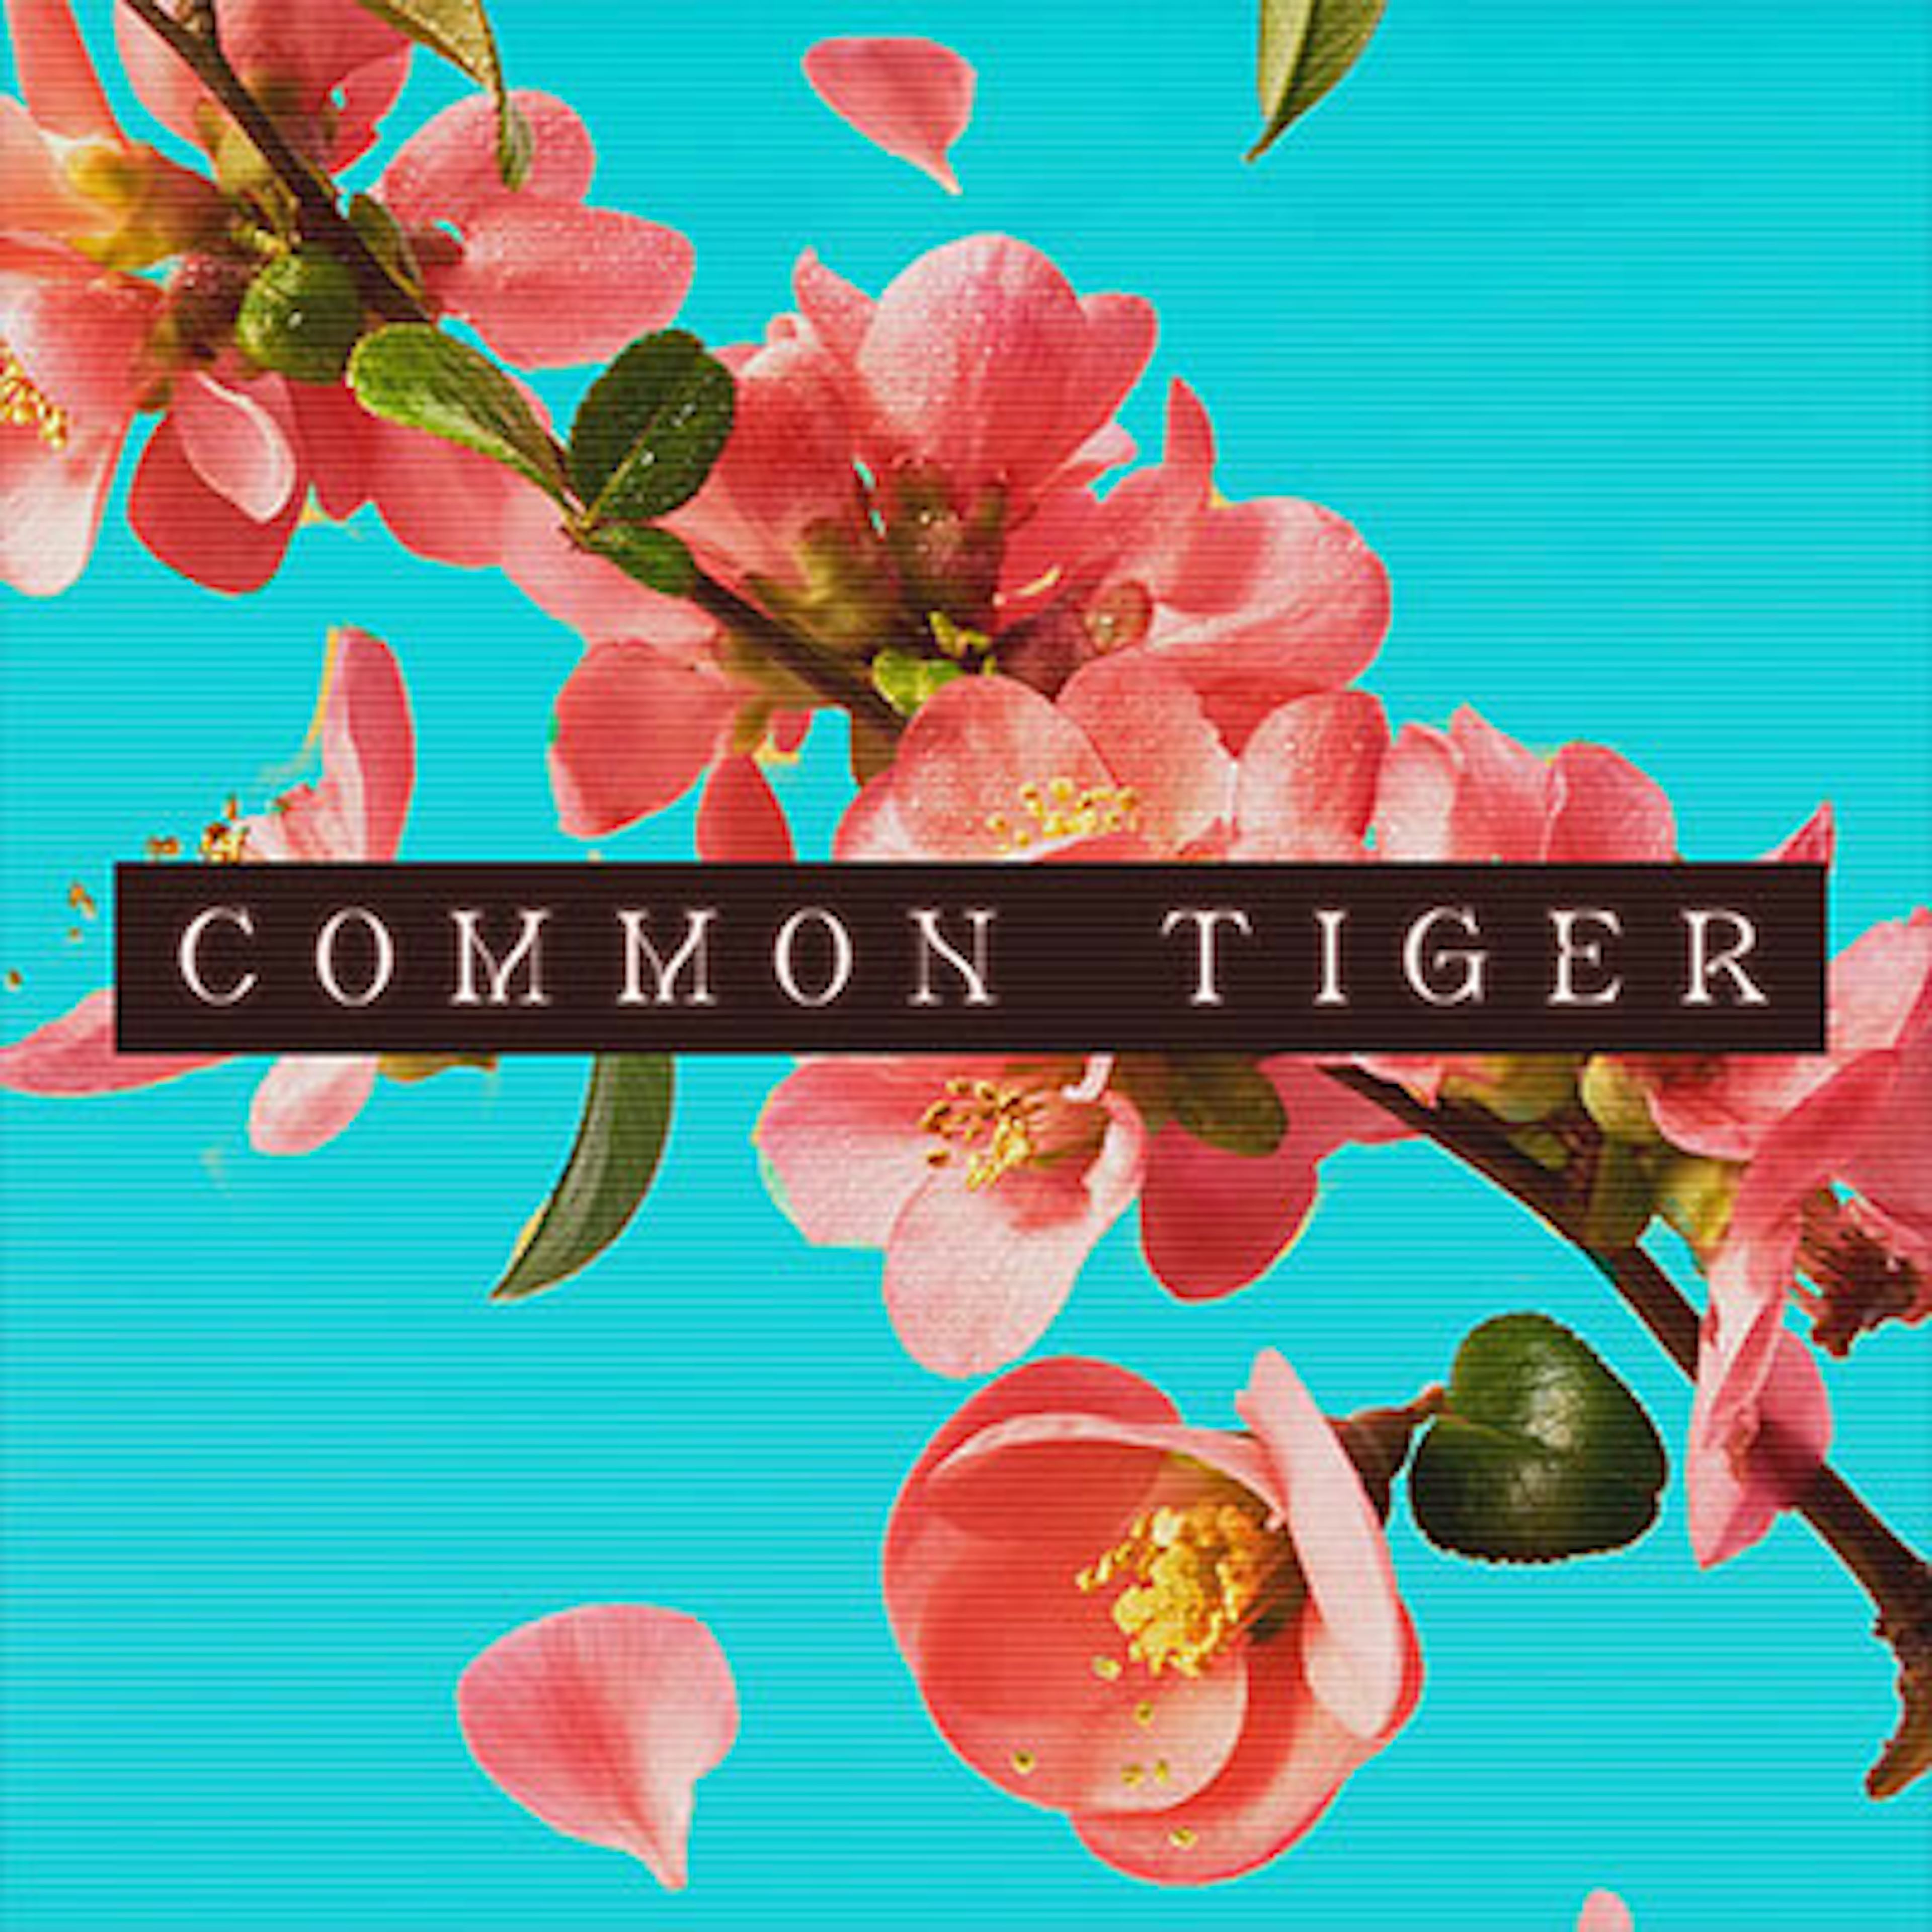 Common Tiger artwork